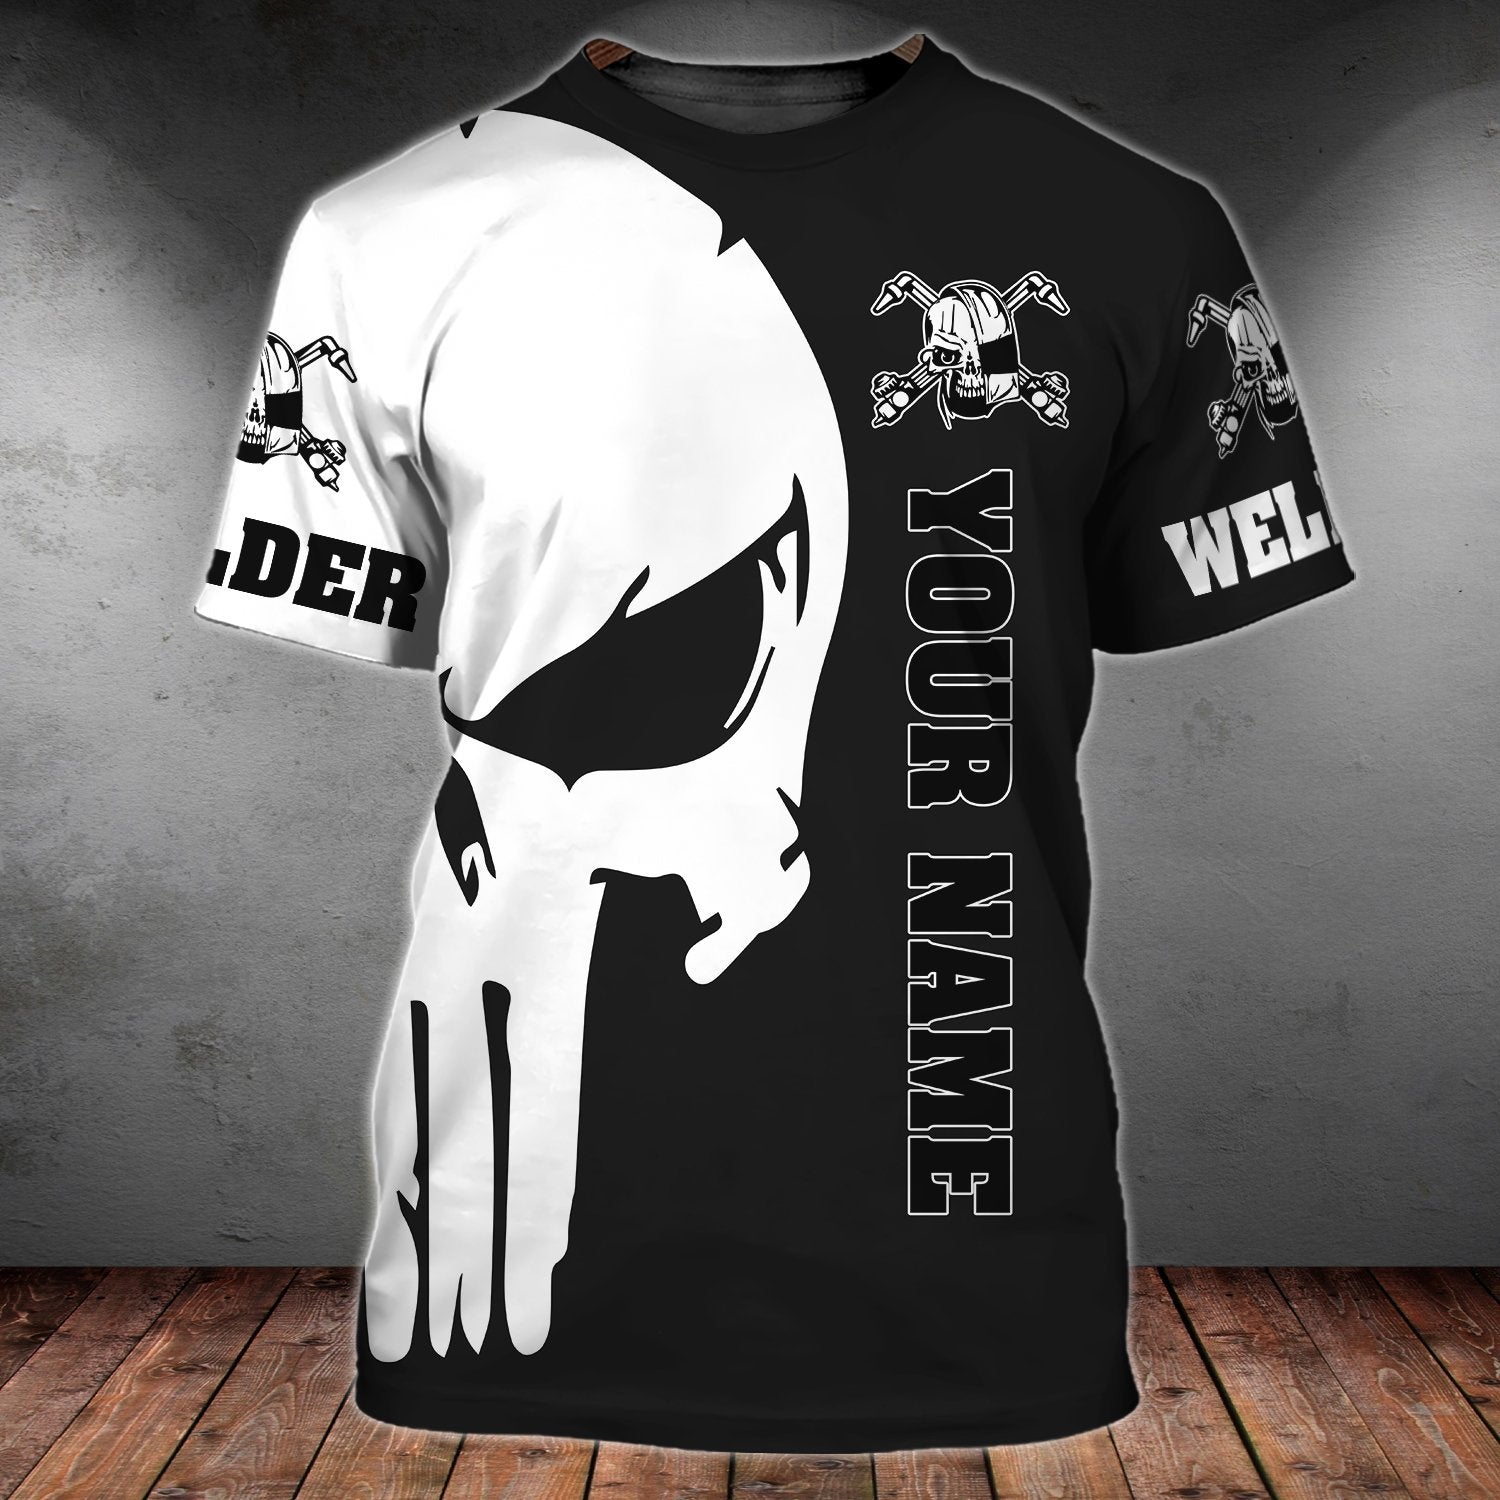 Custom Skull Welder Shirt/ Welding Shirt With Skulls Pattern